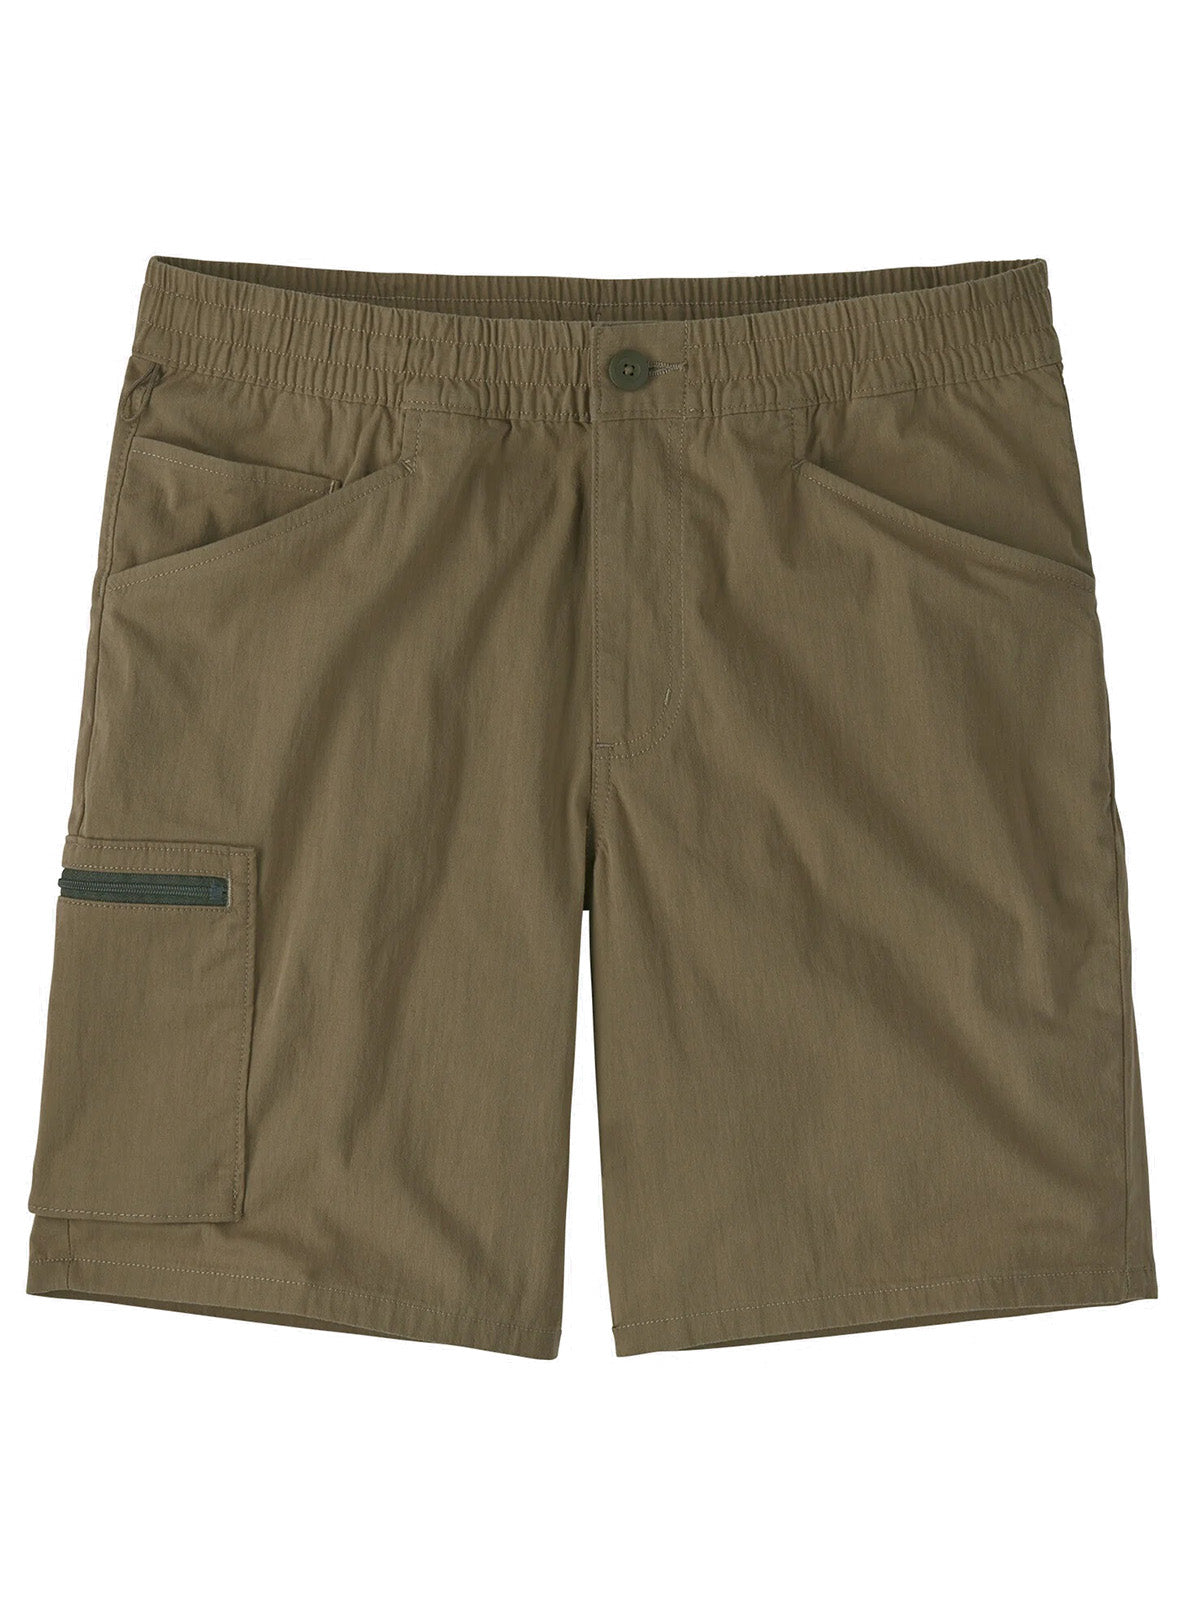 Patagonia Men's Bermuda - Nomader Shorts - Green